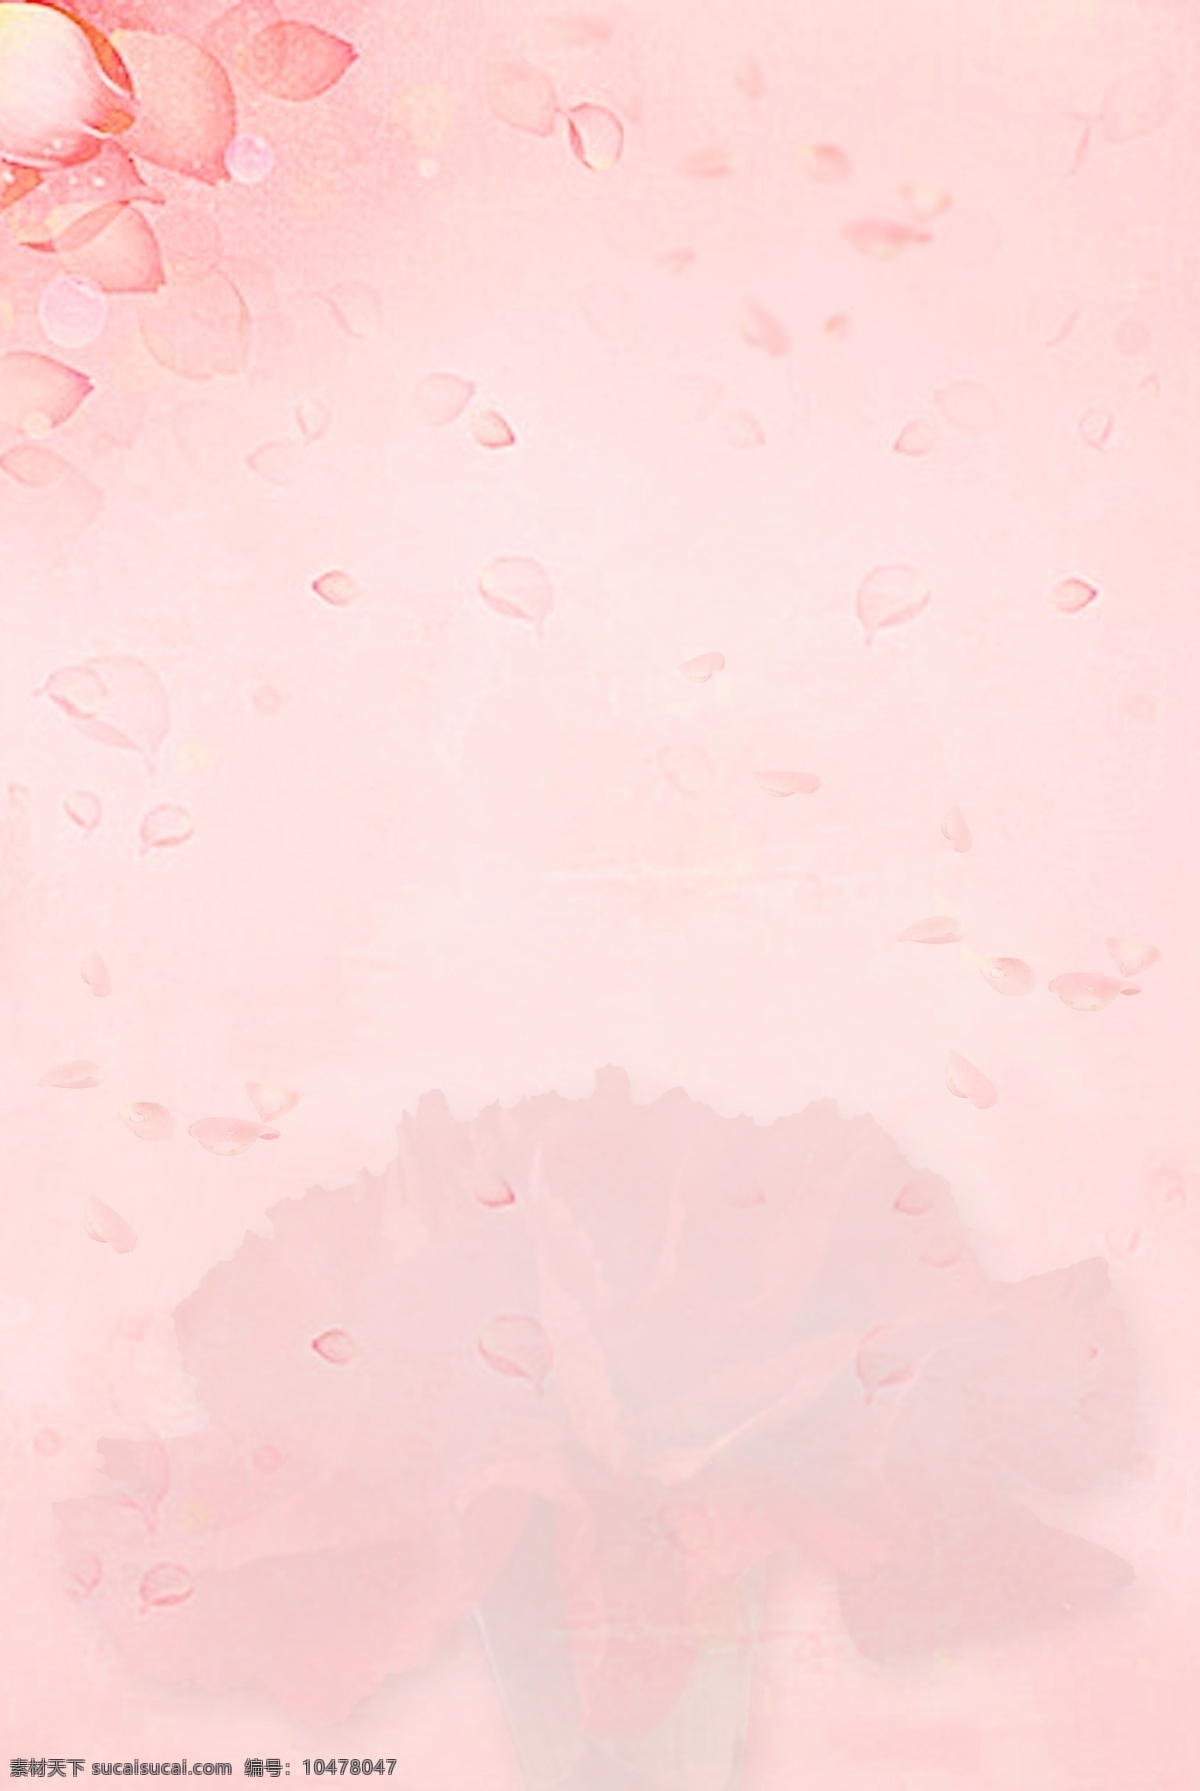 母亲节 粉色 海报 背景 图 粉色背景图 花瓣 康乃馨 母亲节背景图 海报背景图 幸福